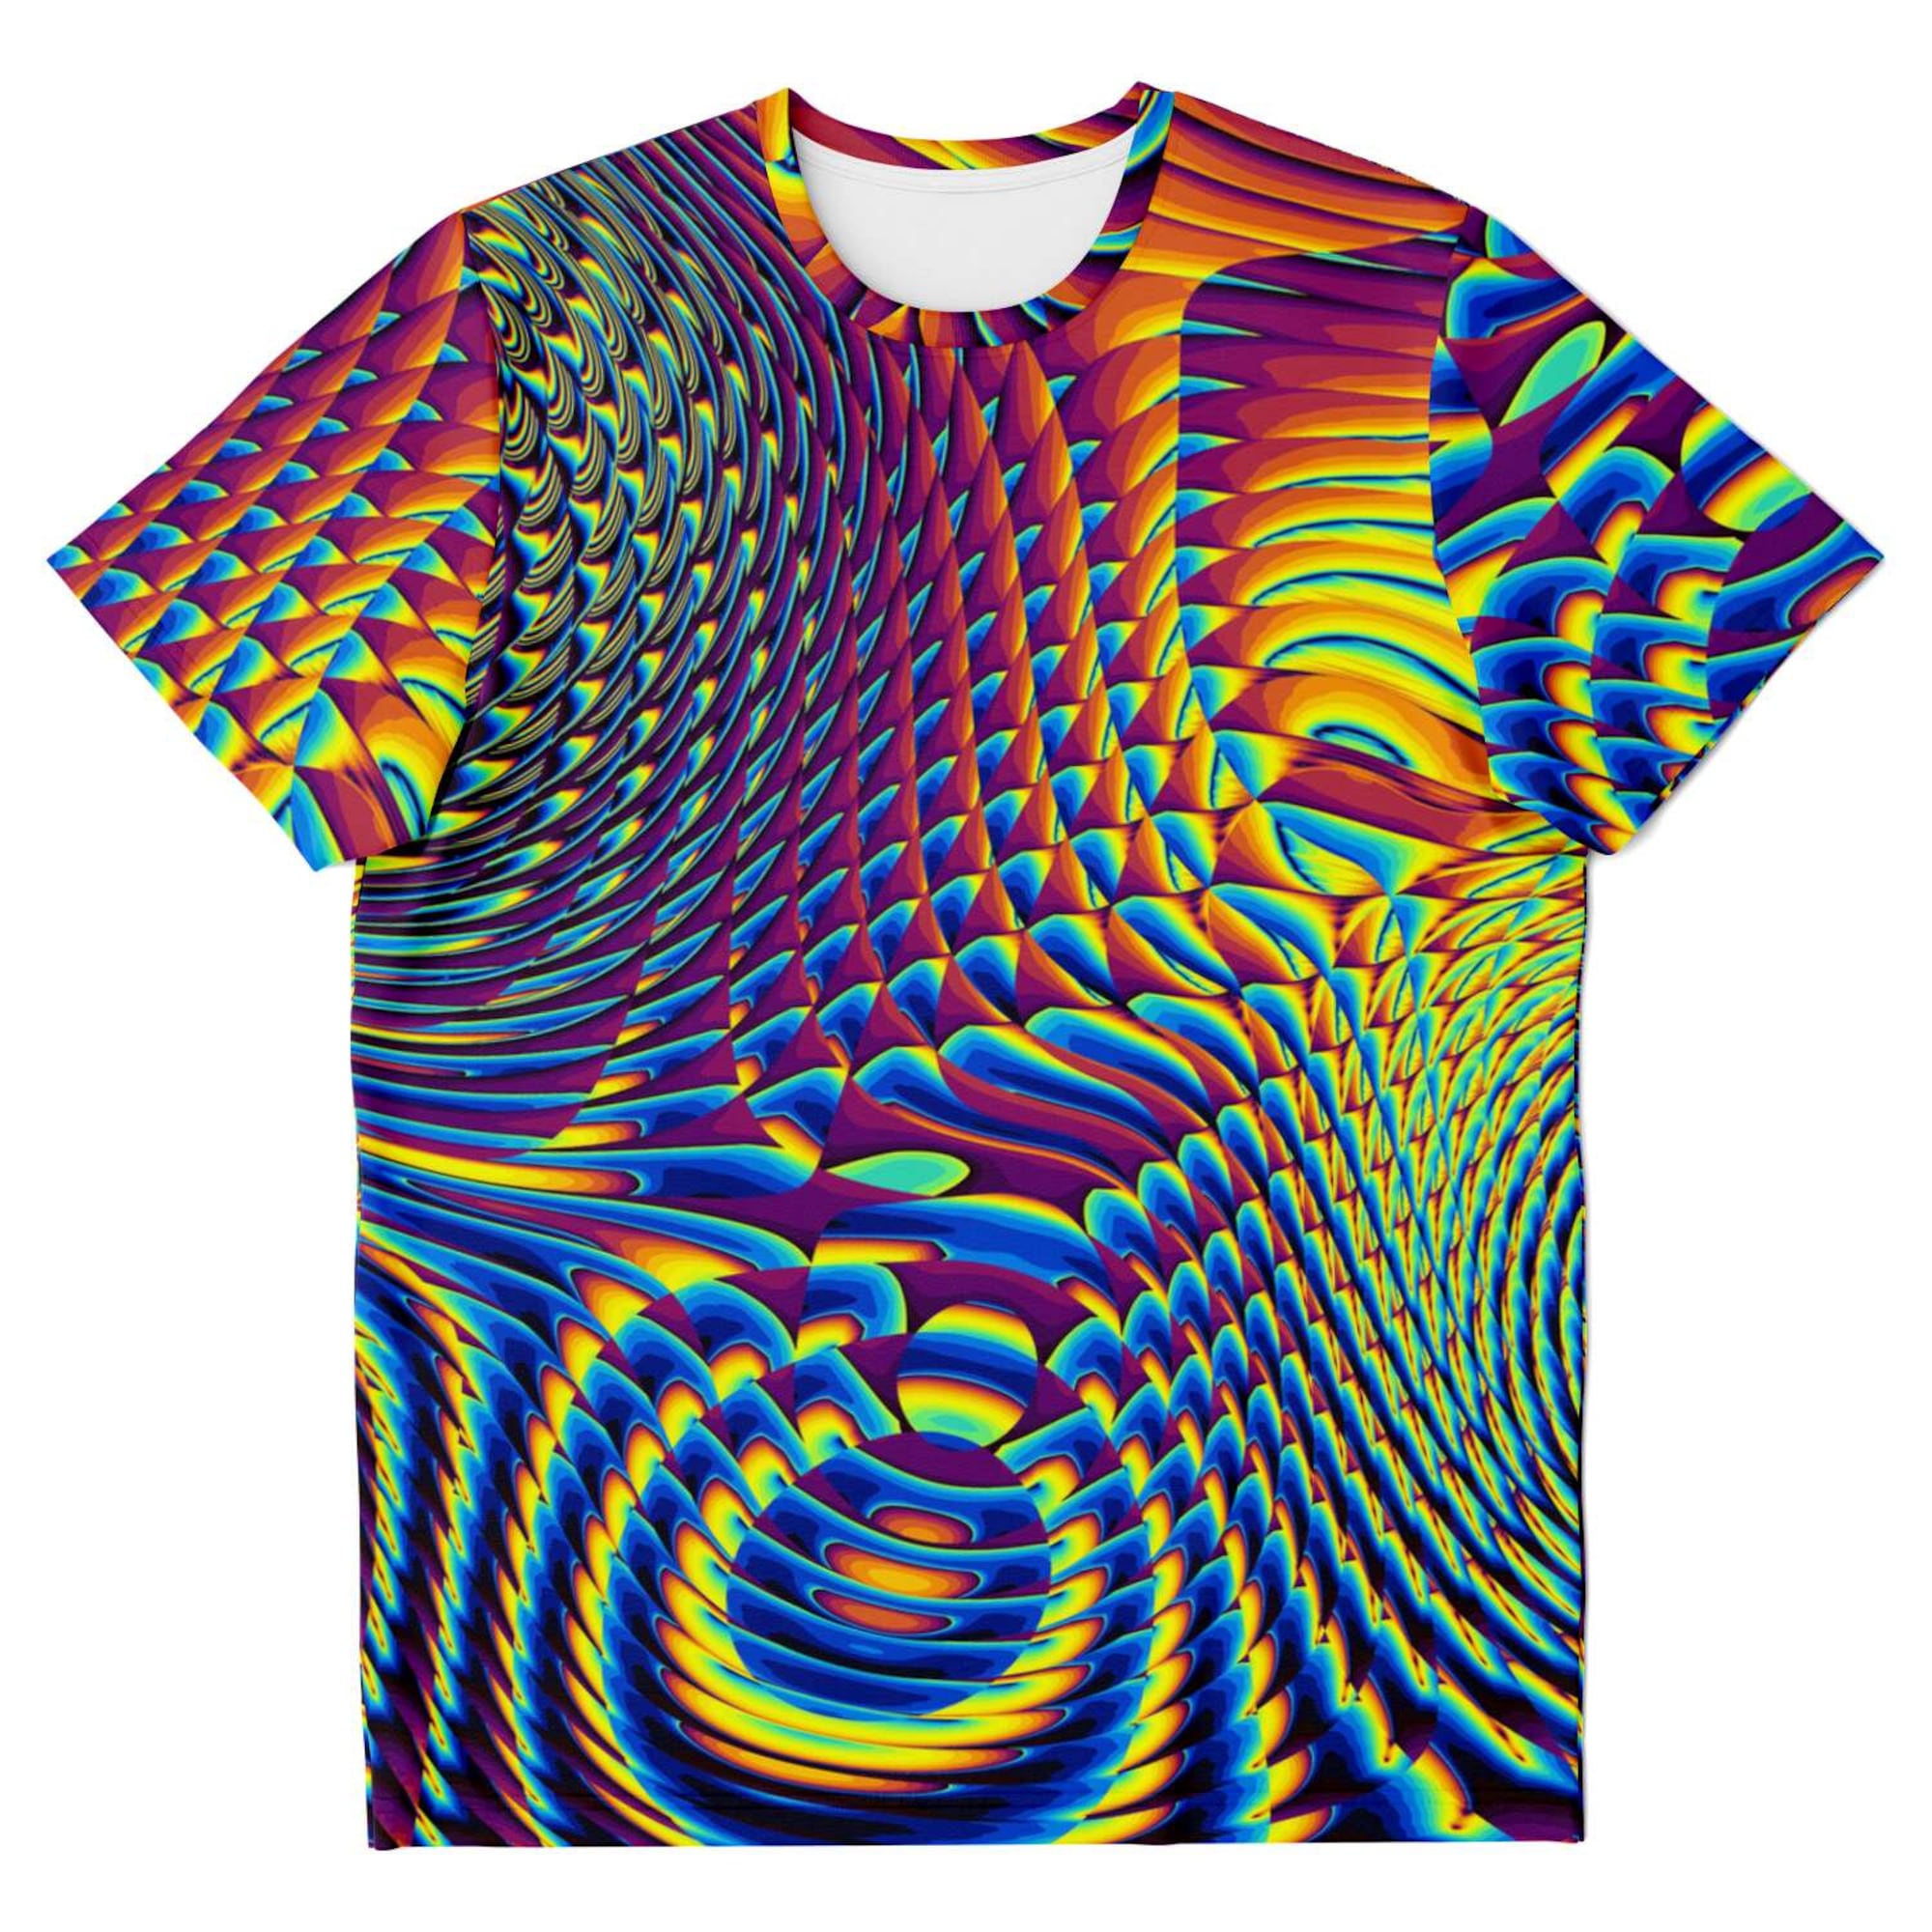 Discover Psychedelic Fractals Spirals Festival EDM DMT LSD 3D T Shirt